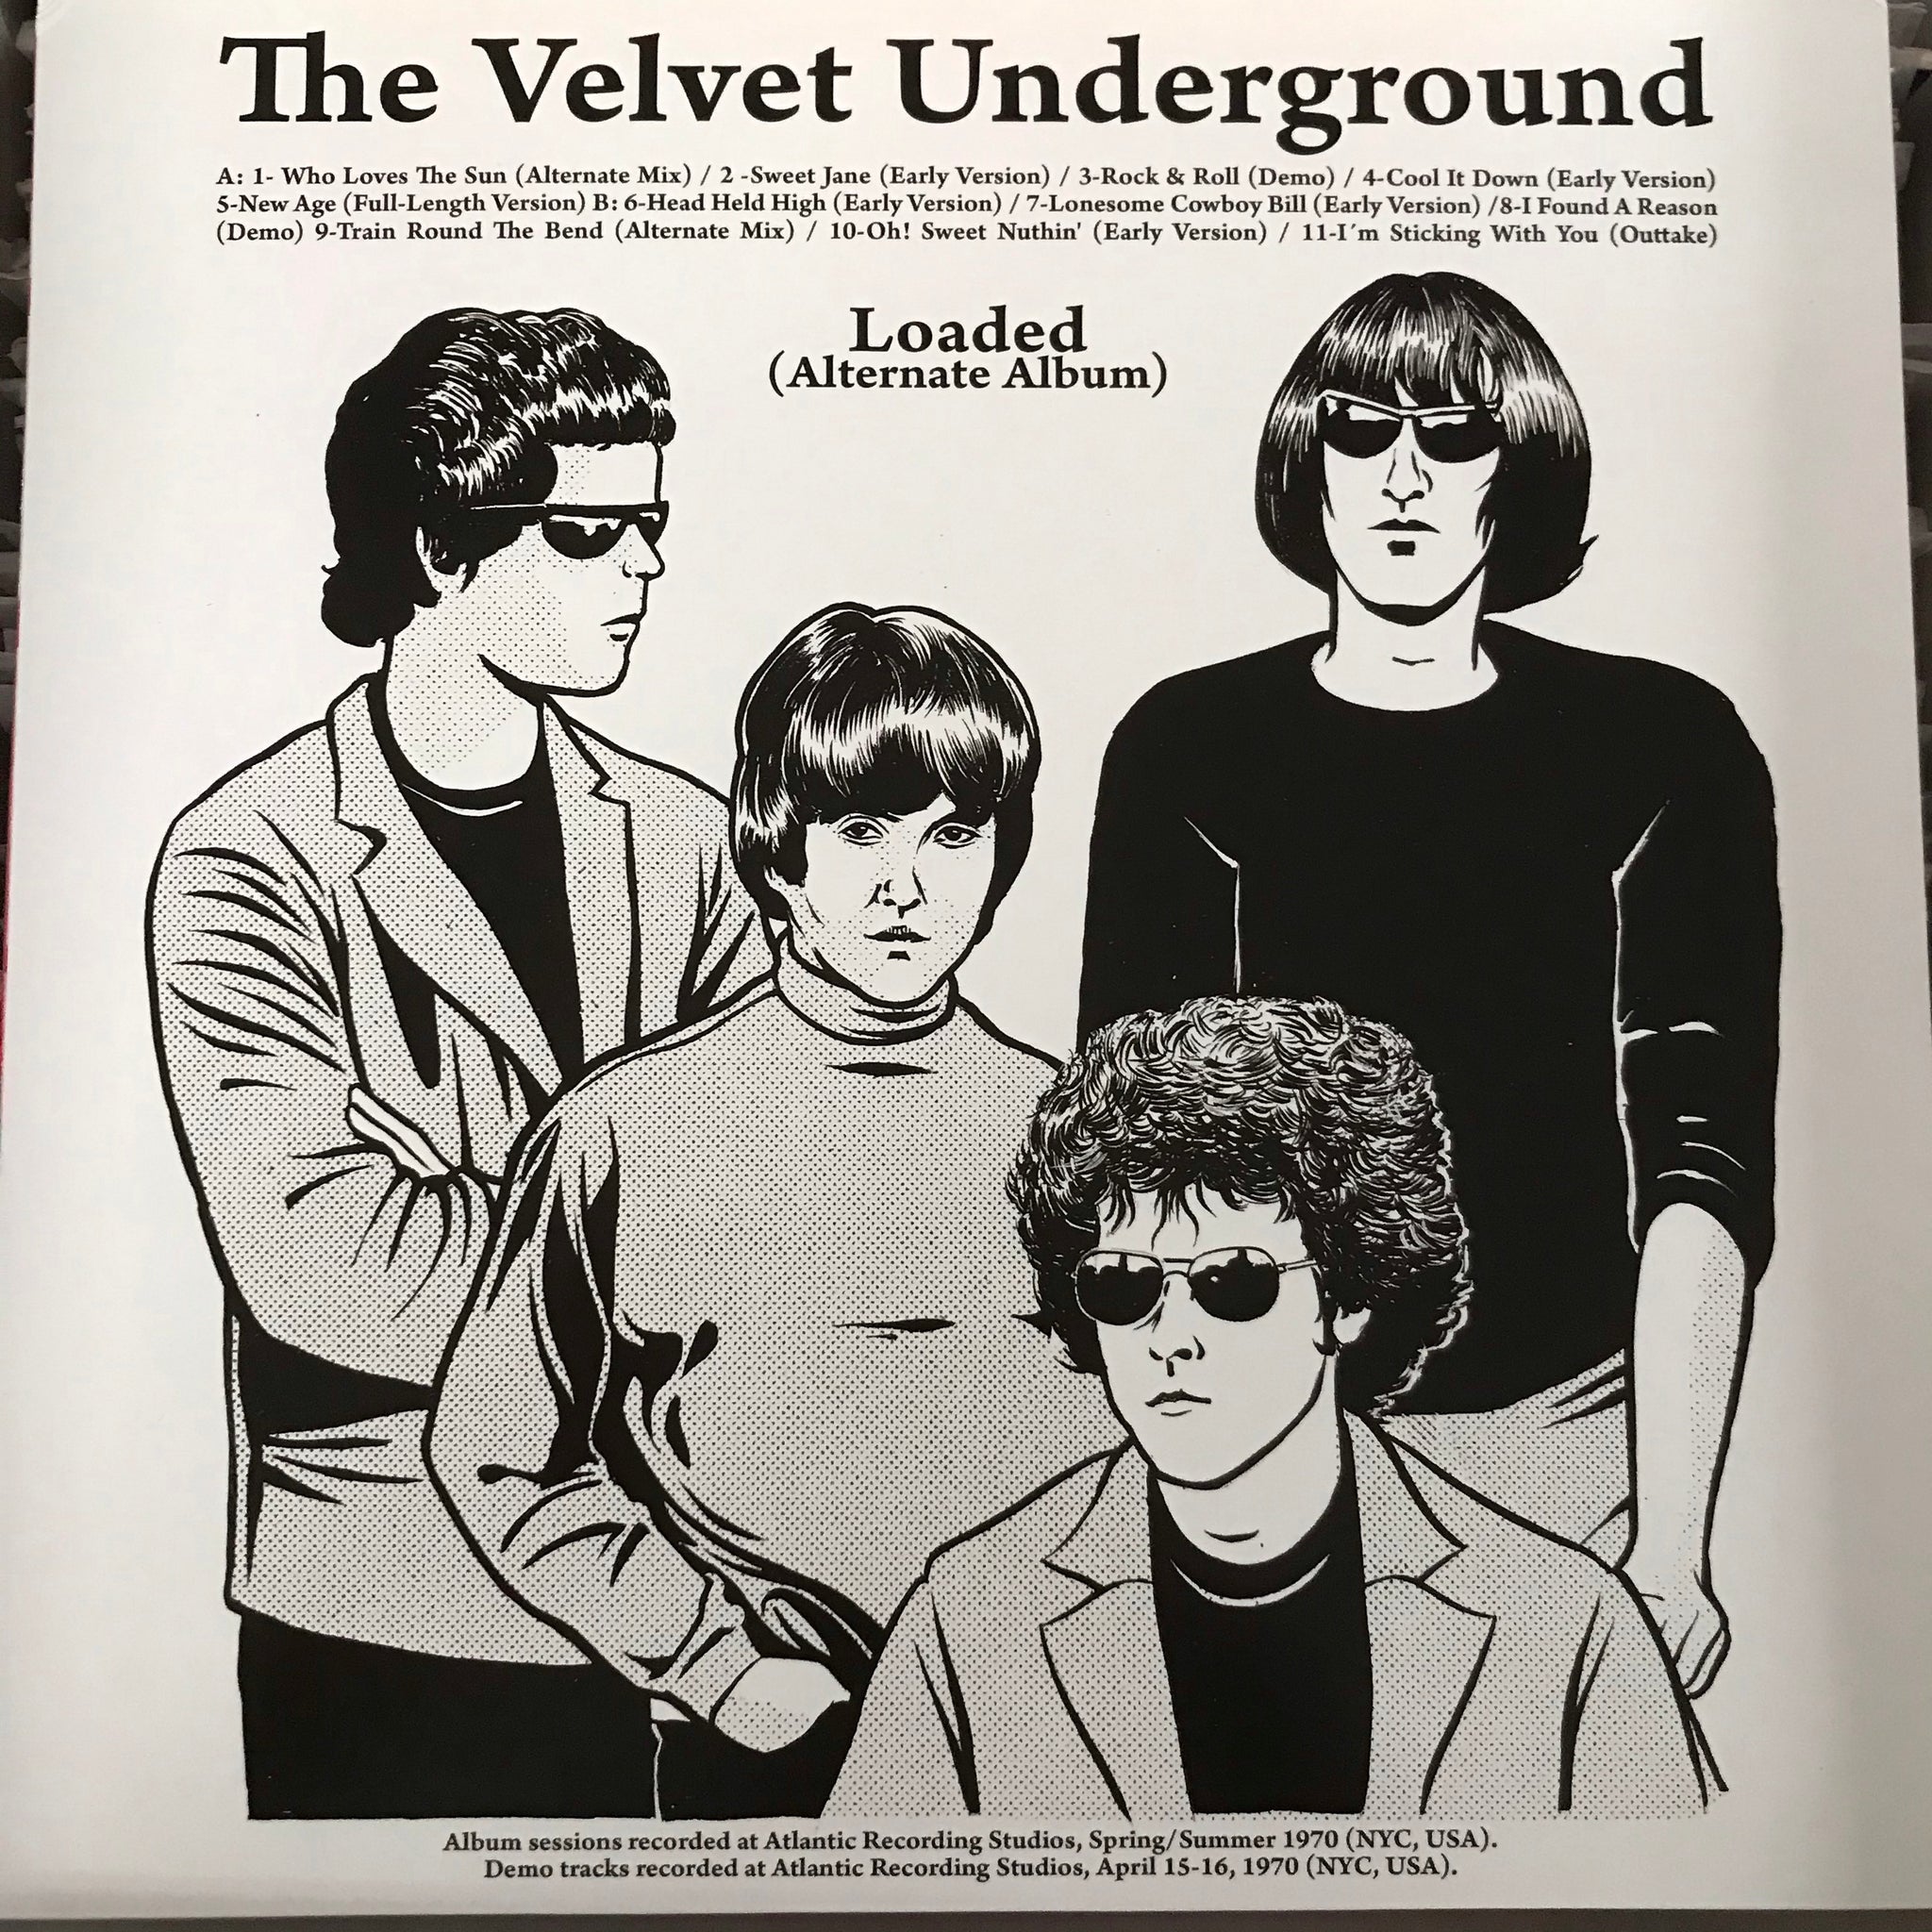 THE VELVET UNDERGROUND - LOADED (ALTERNATE ALBUM) Vinyl LP